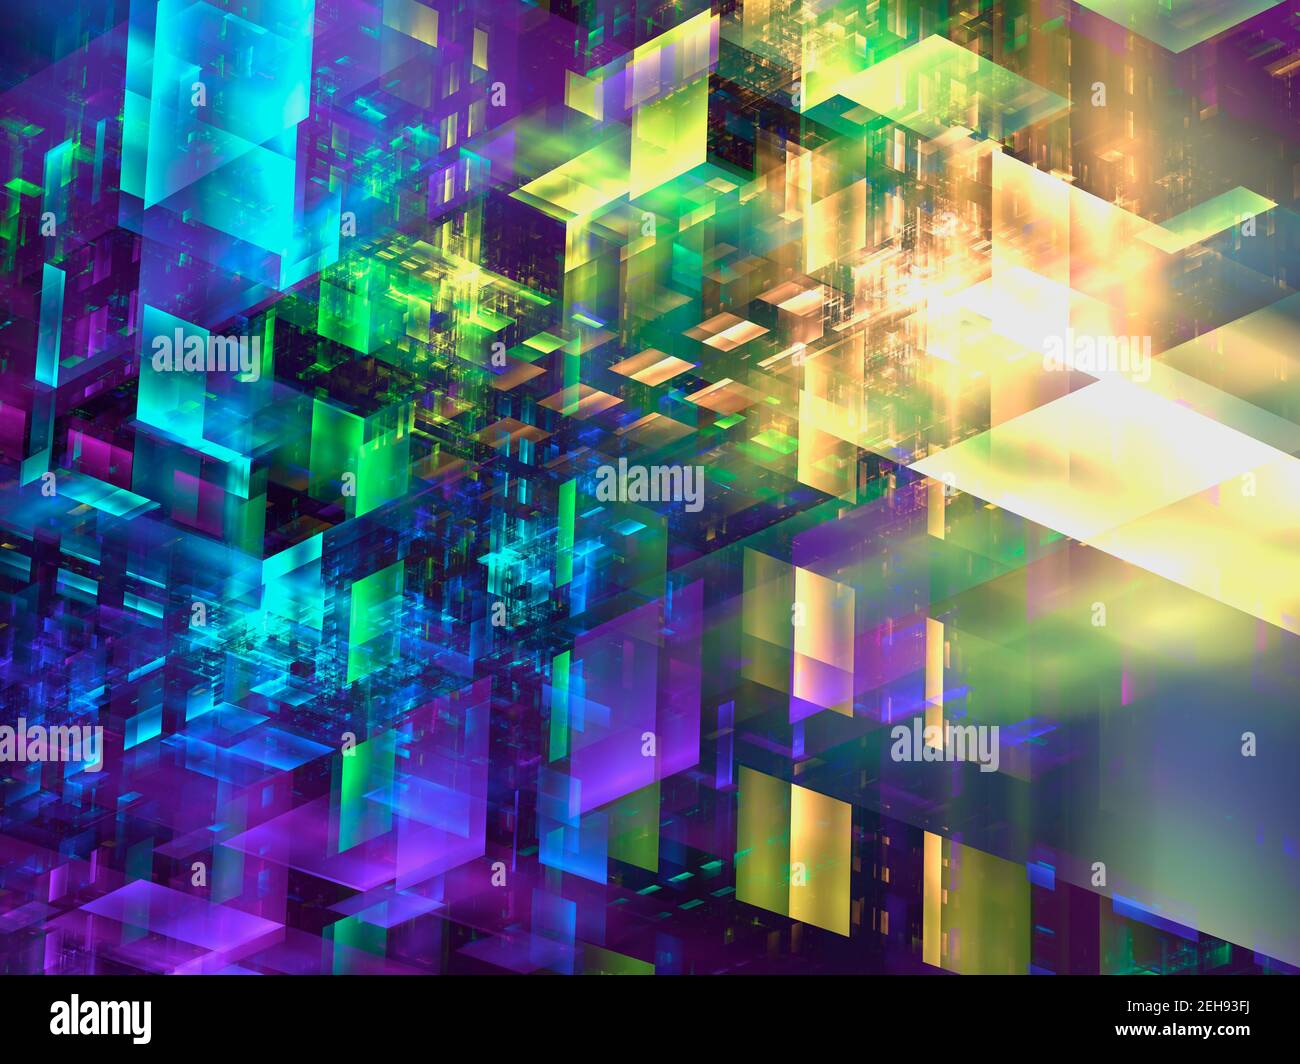 Konstruktion von mehrfarbigen Glasblöcken - abstrakte abbildung 3D Stockfoto